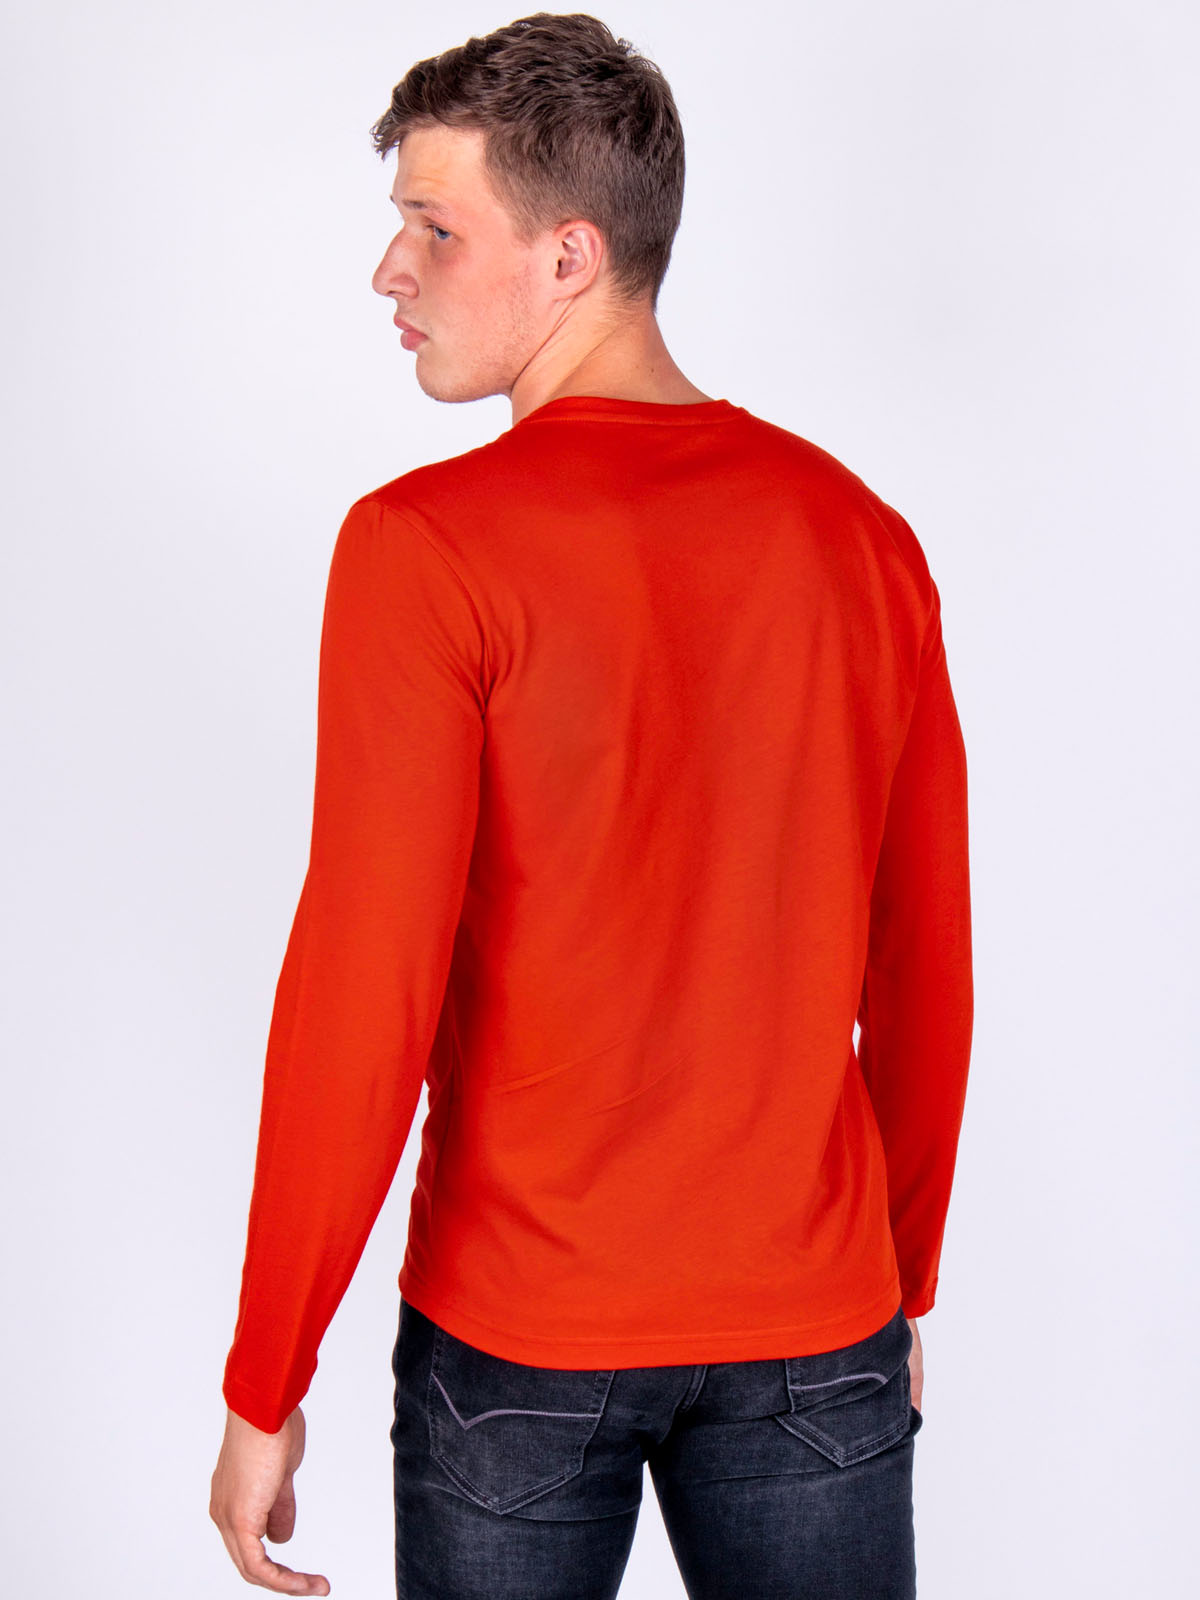 Μπλούζα σε κόκκινο χρώμα με τρίχρωμη στ - 42308 € 16.31 img3